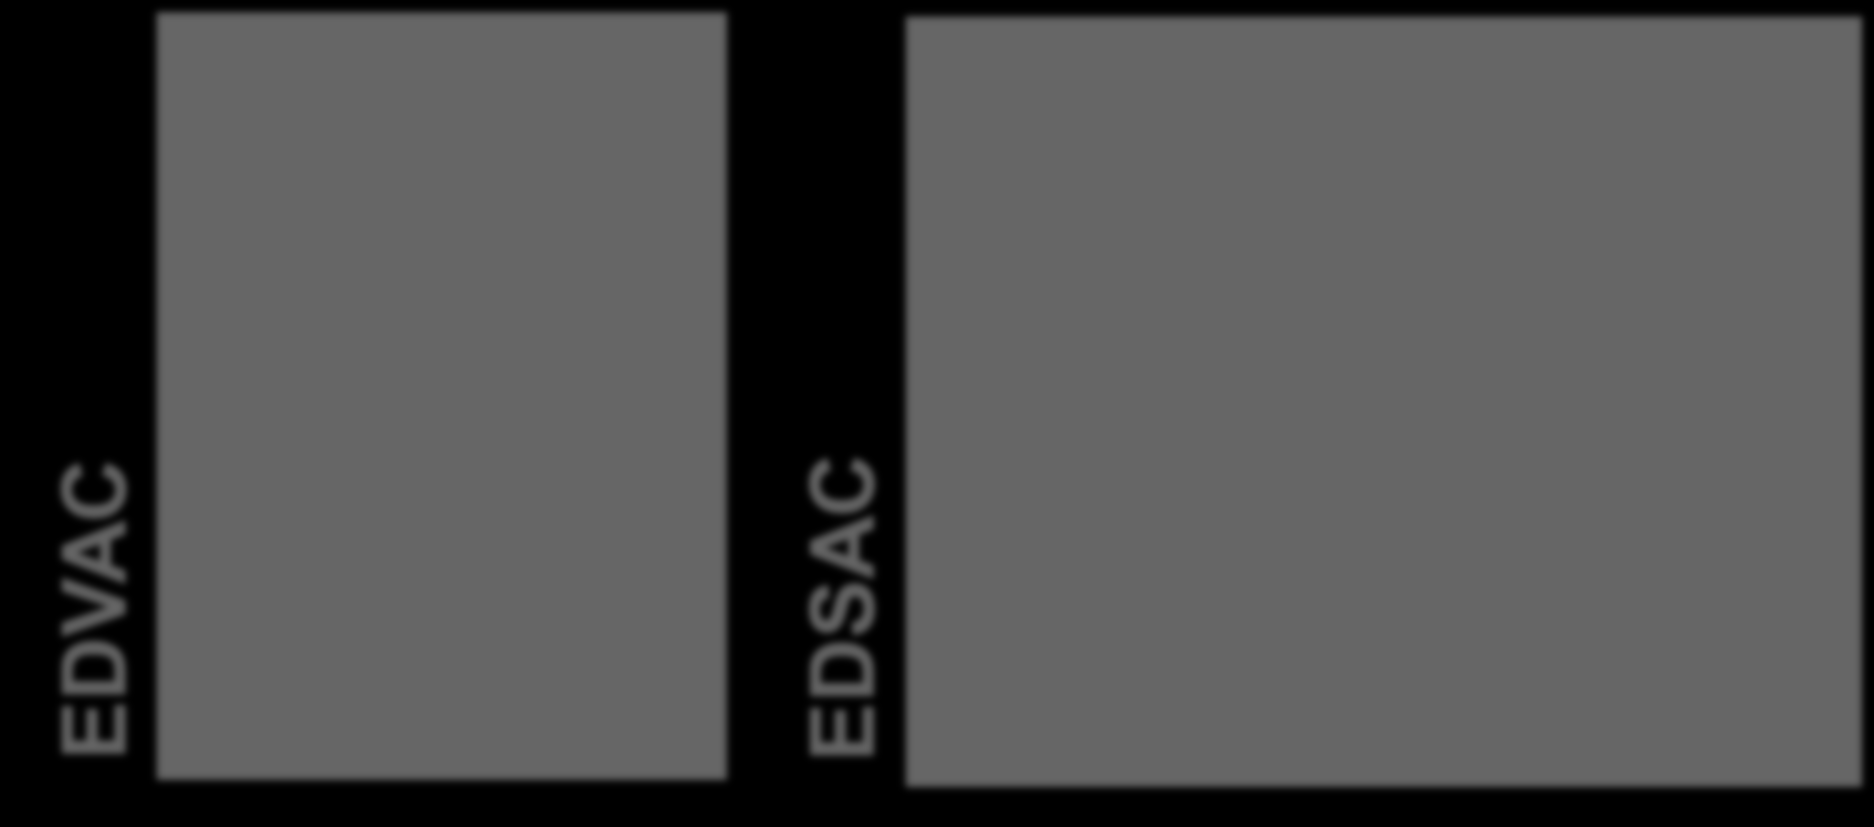 EDVAC EDSAC Computadores baseados no modelo de von Neumann O primeiro